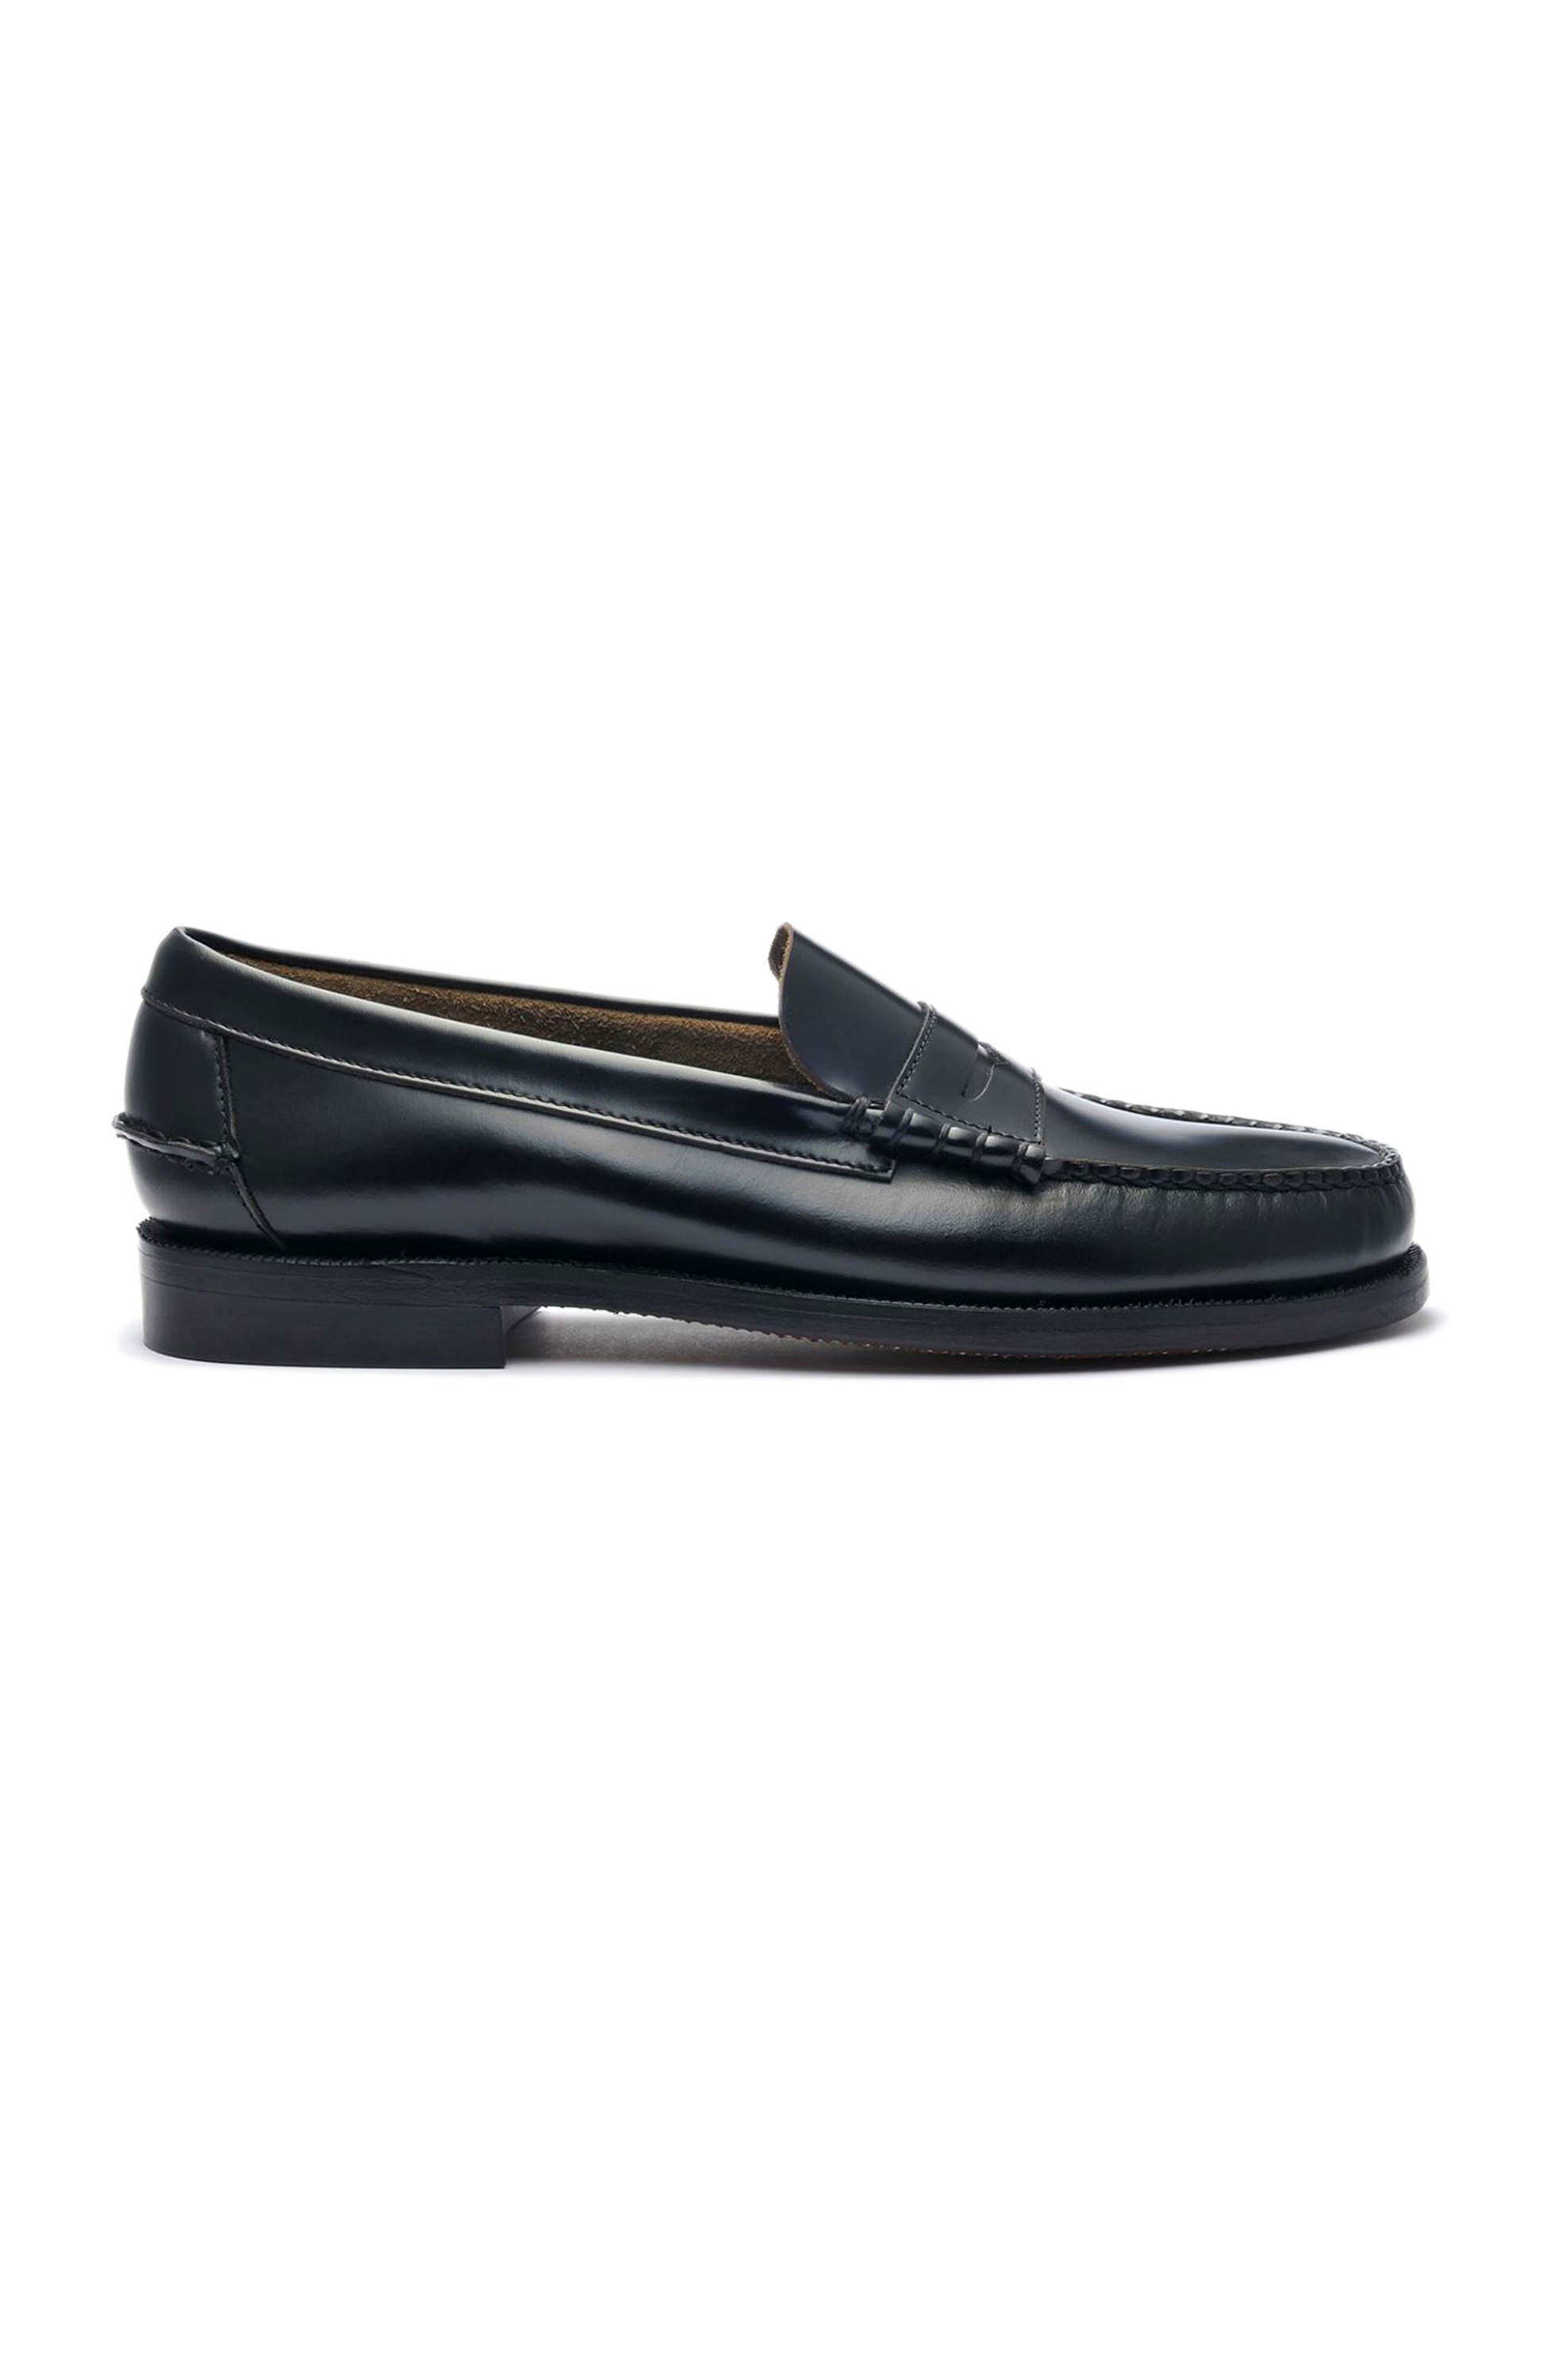 Ανδρική Μόδα > Ανδρικά Παπούτσια > Ανδρικά Μοκασίνια & Loafers Sebago® ανδρικά penny loafers δερμάτινα "Classic Dan " - L7000300-902W Μαύρο